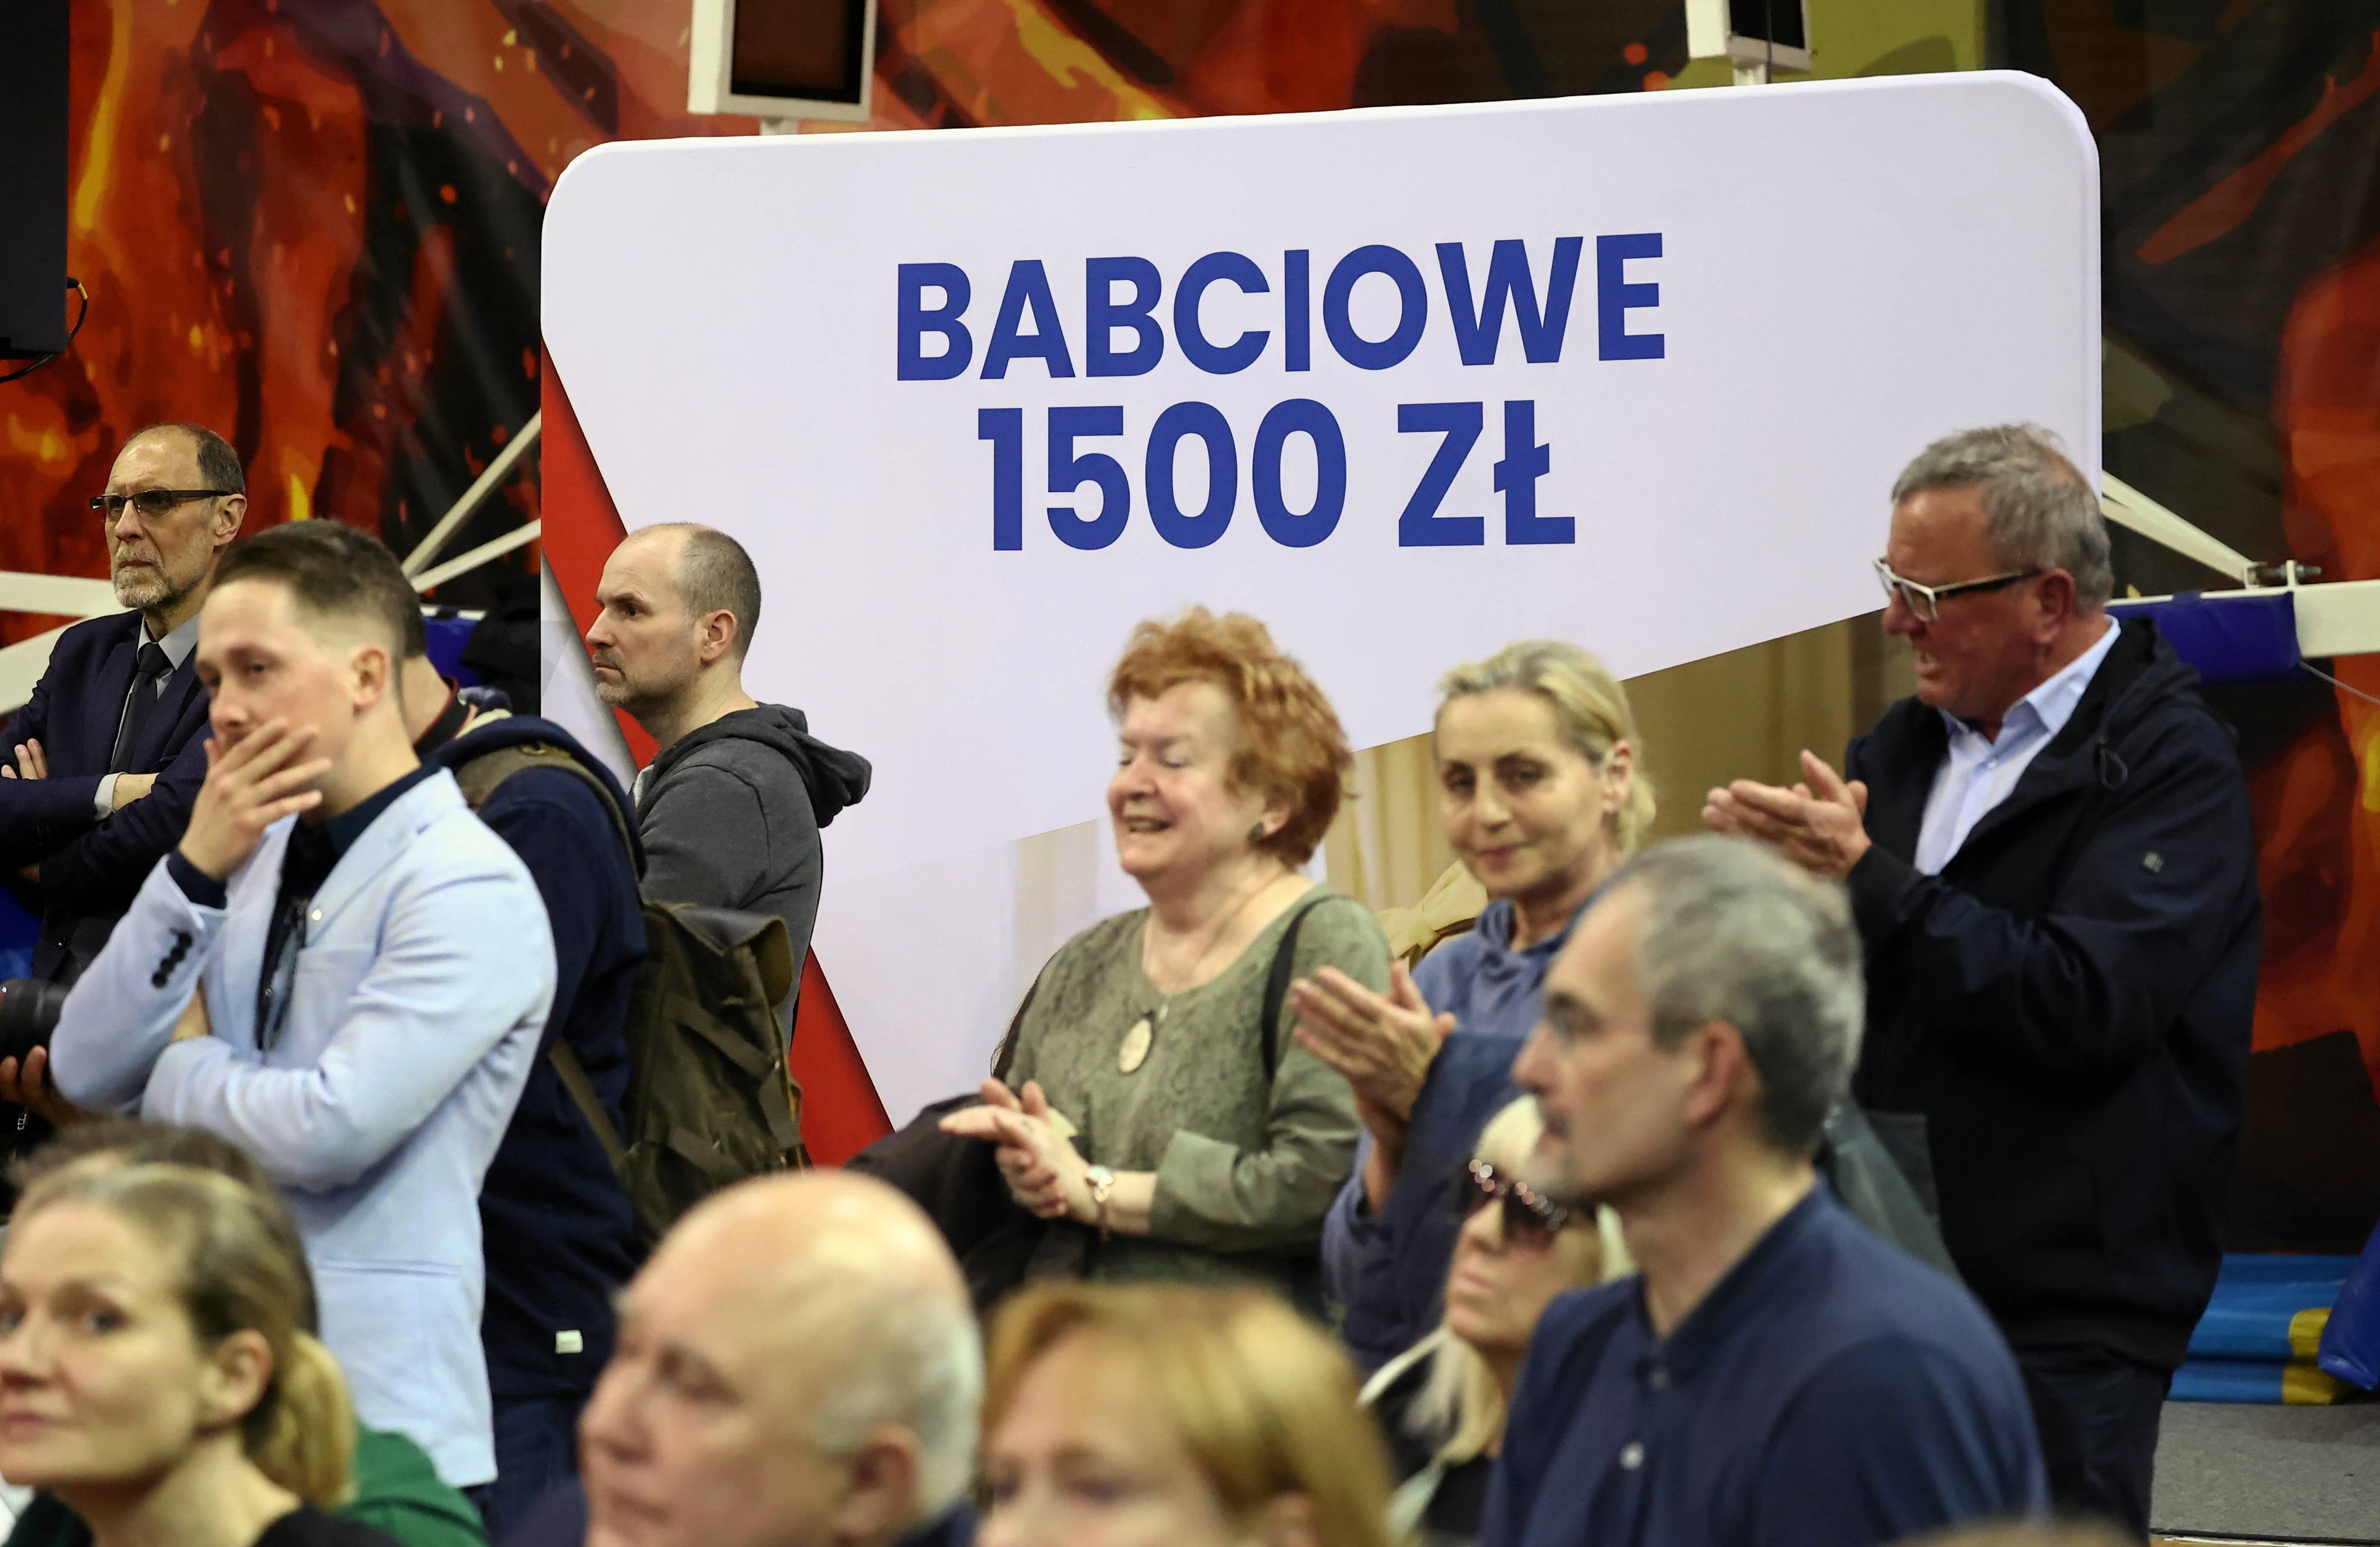 Ludzie z transparentem "Babciowe 1500 zł"